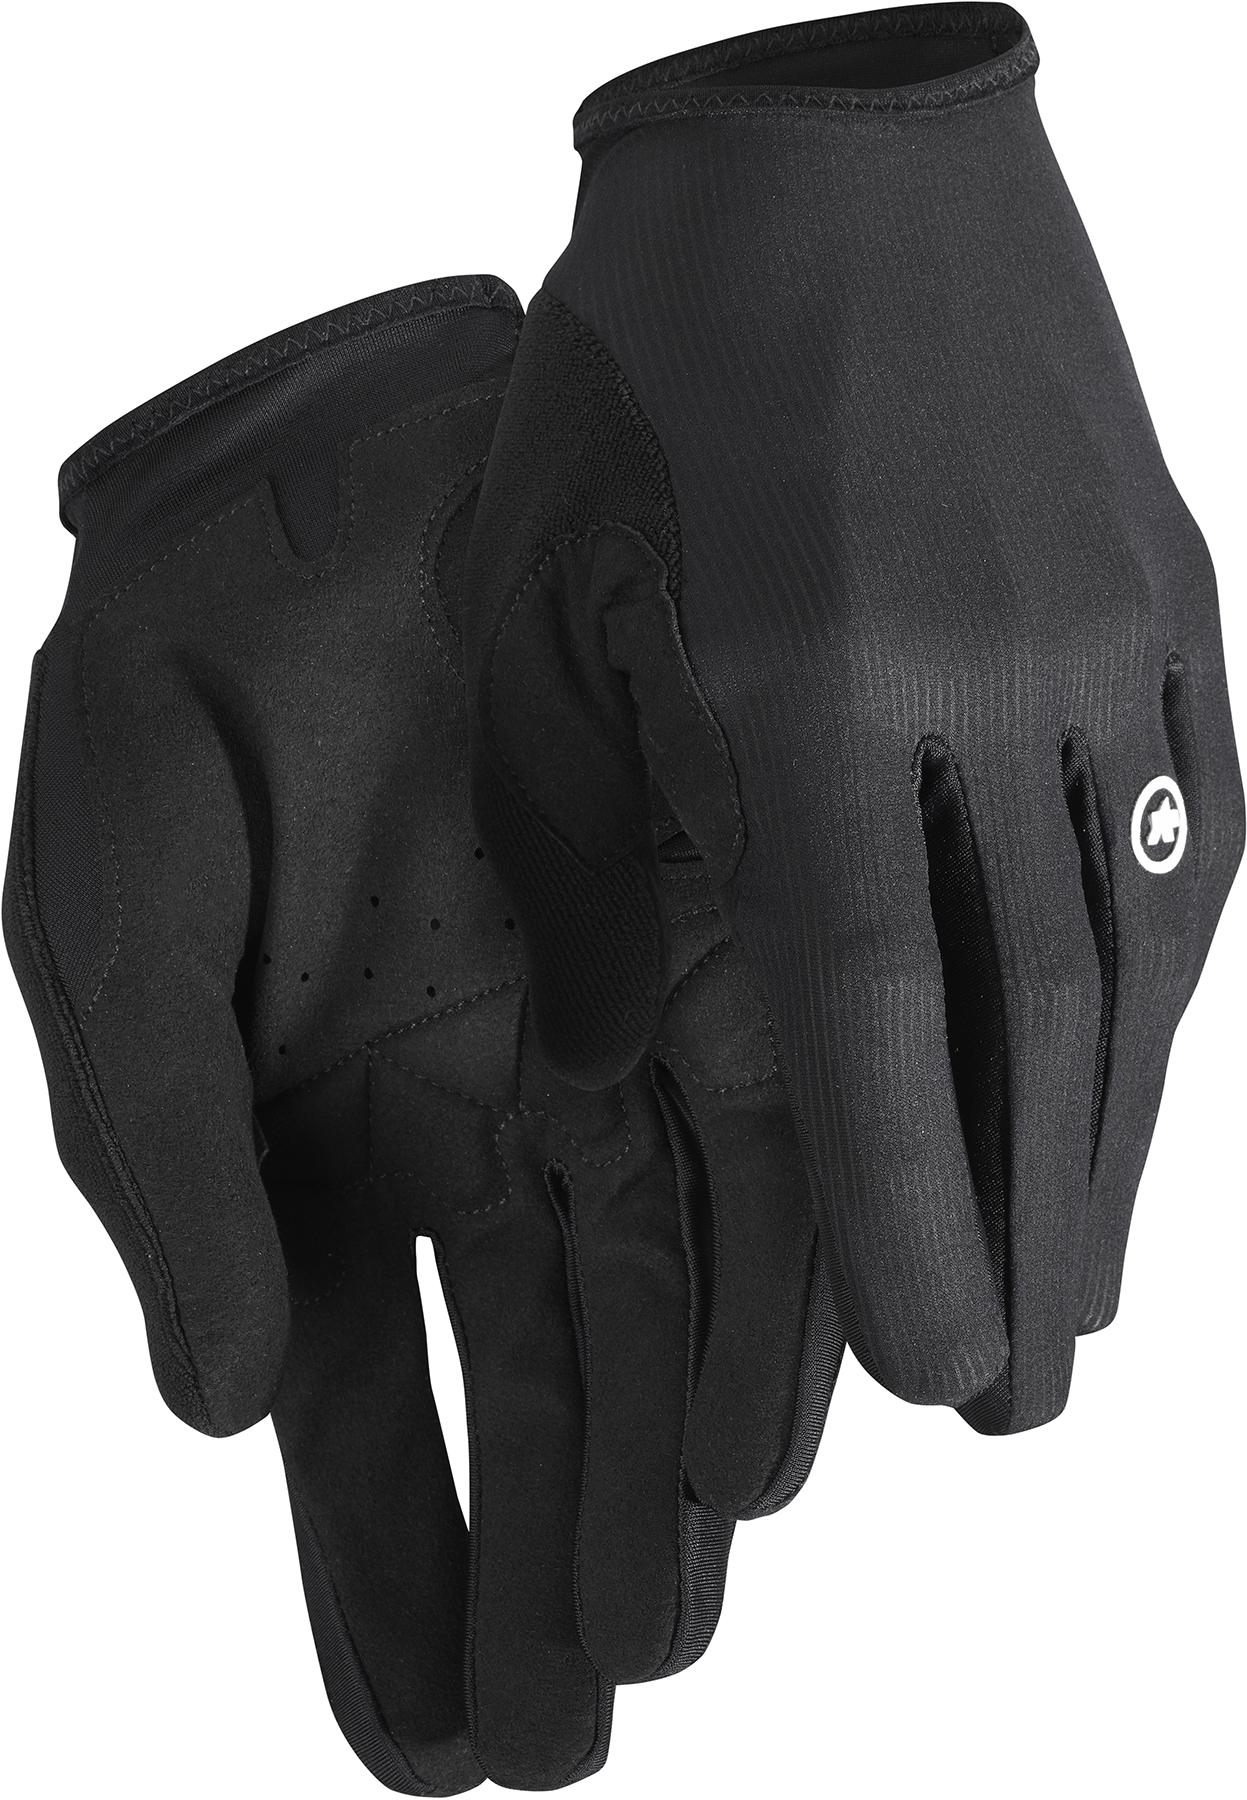 Assos Rs Long Fingered Gloves Targa - Black Series